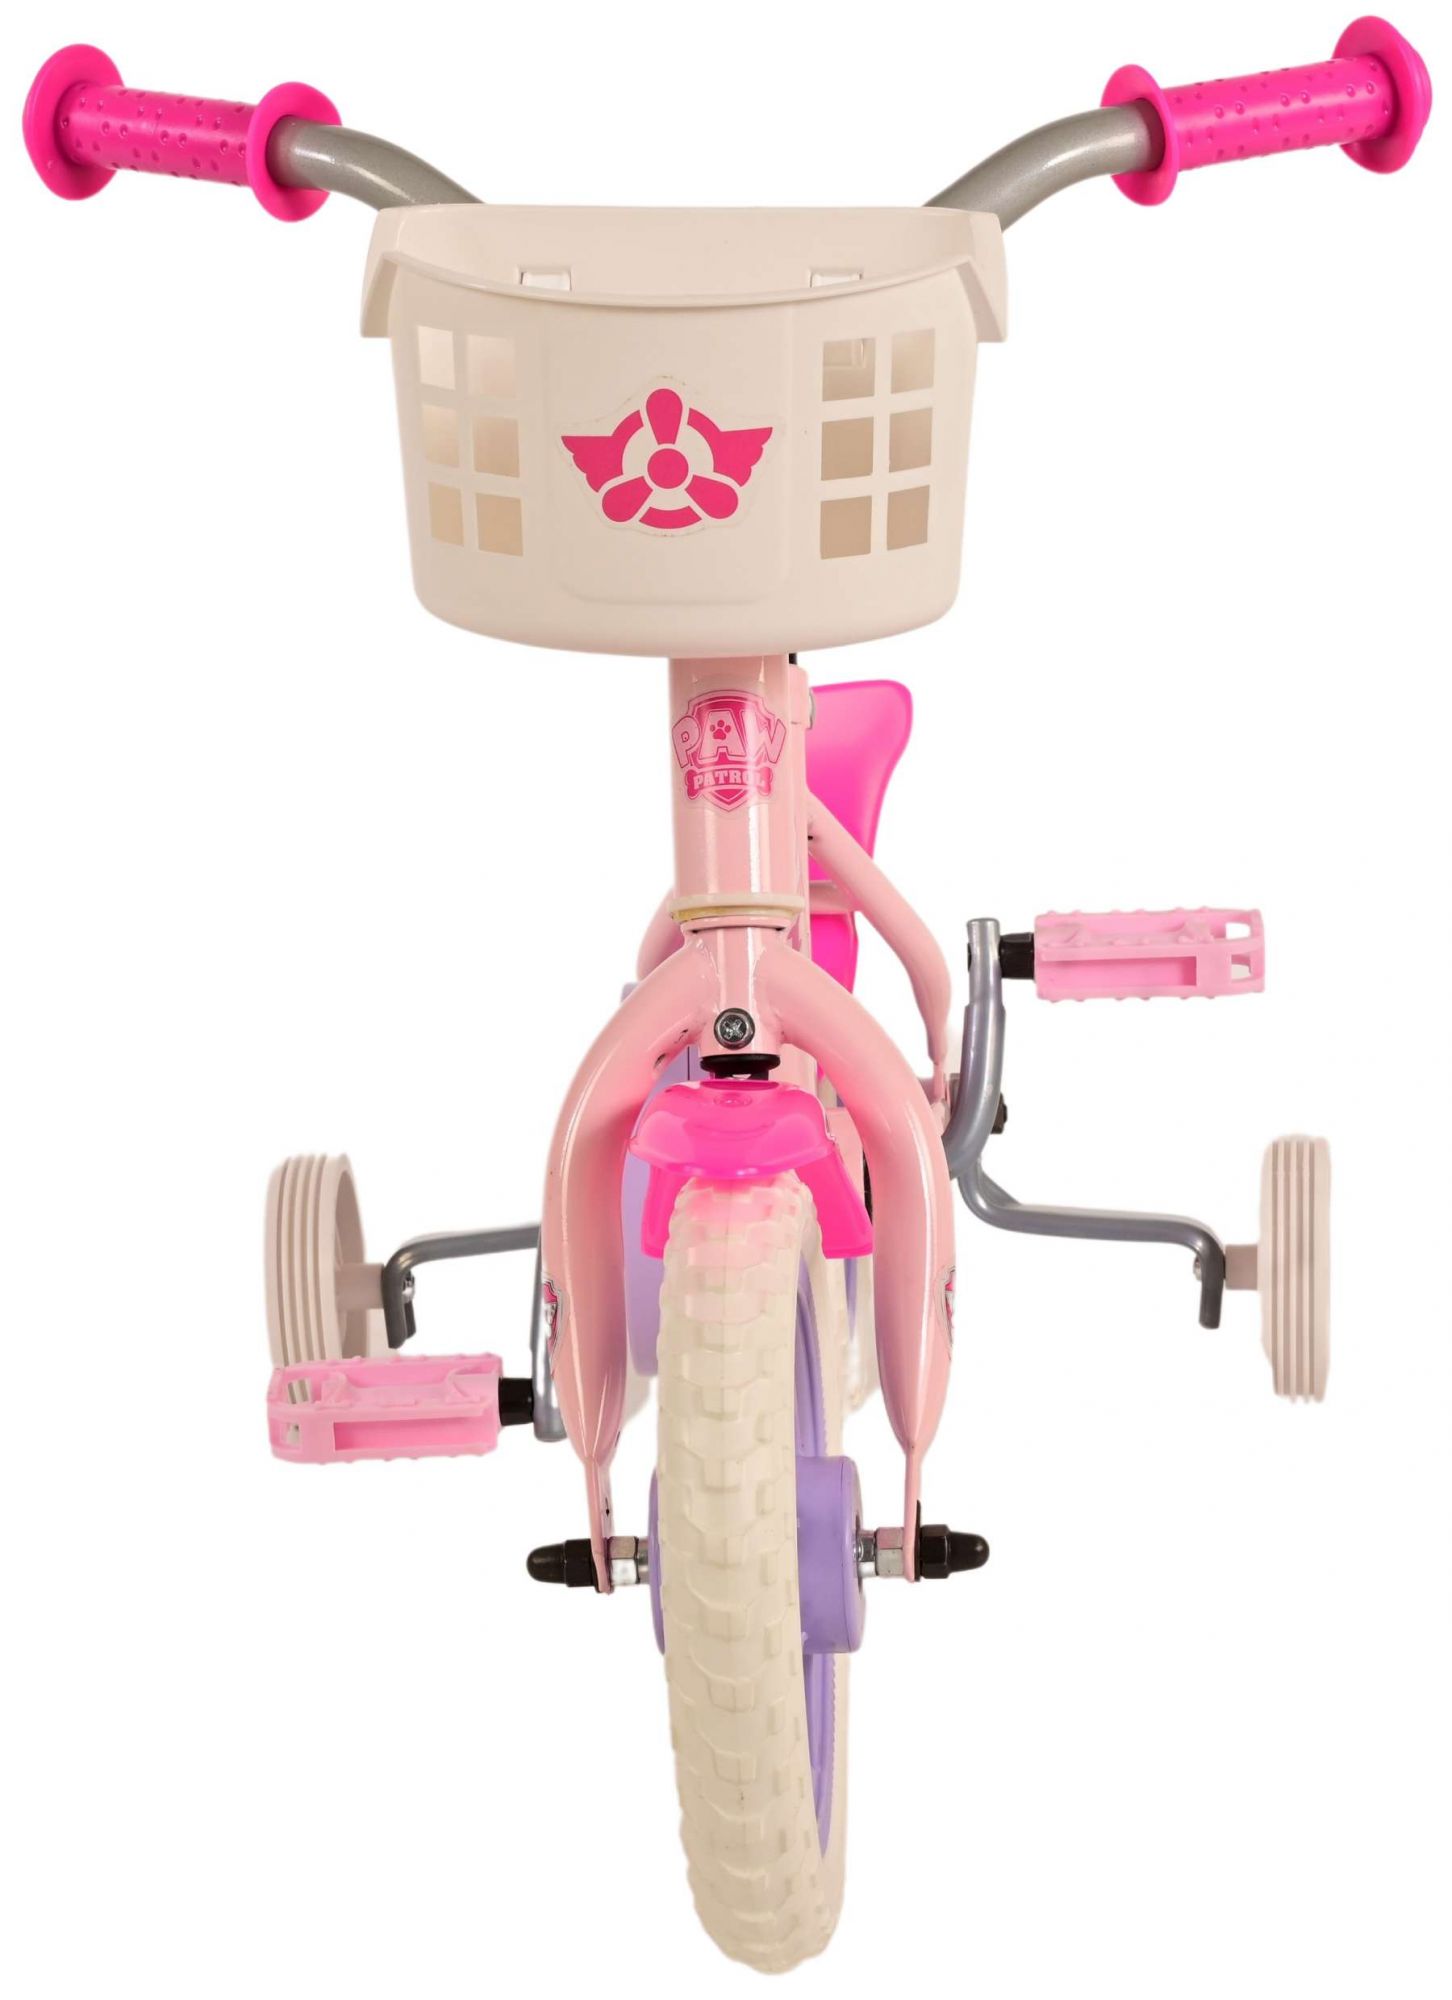 Kinderfahrrad Paw Patrol für Mädchen 10 Zoll Kinderrad Rosa Fahrrad 